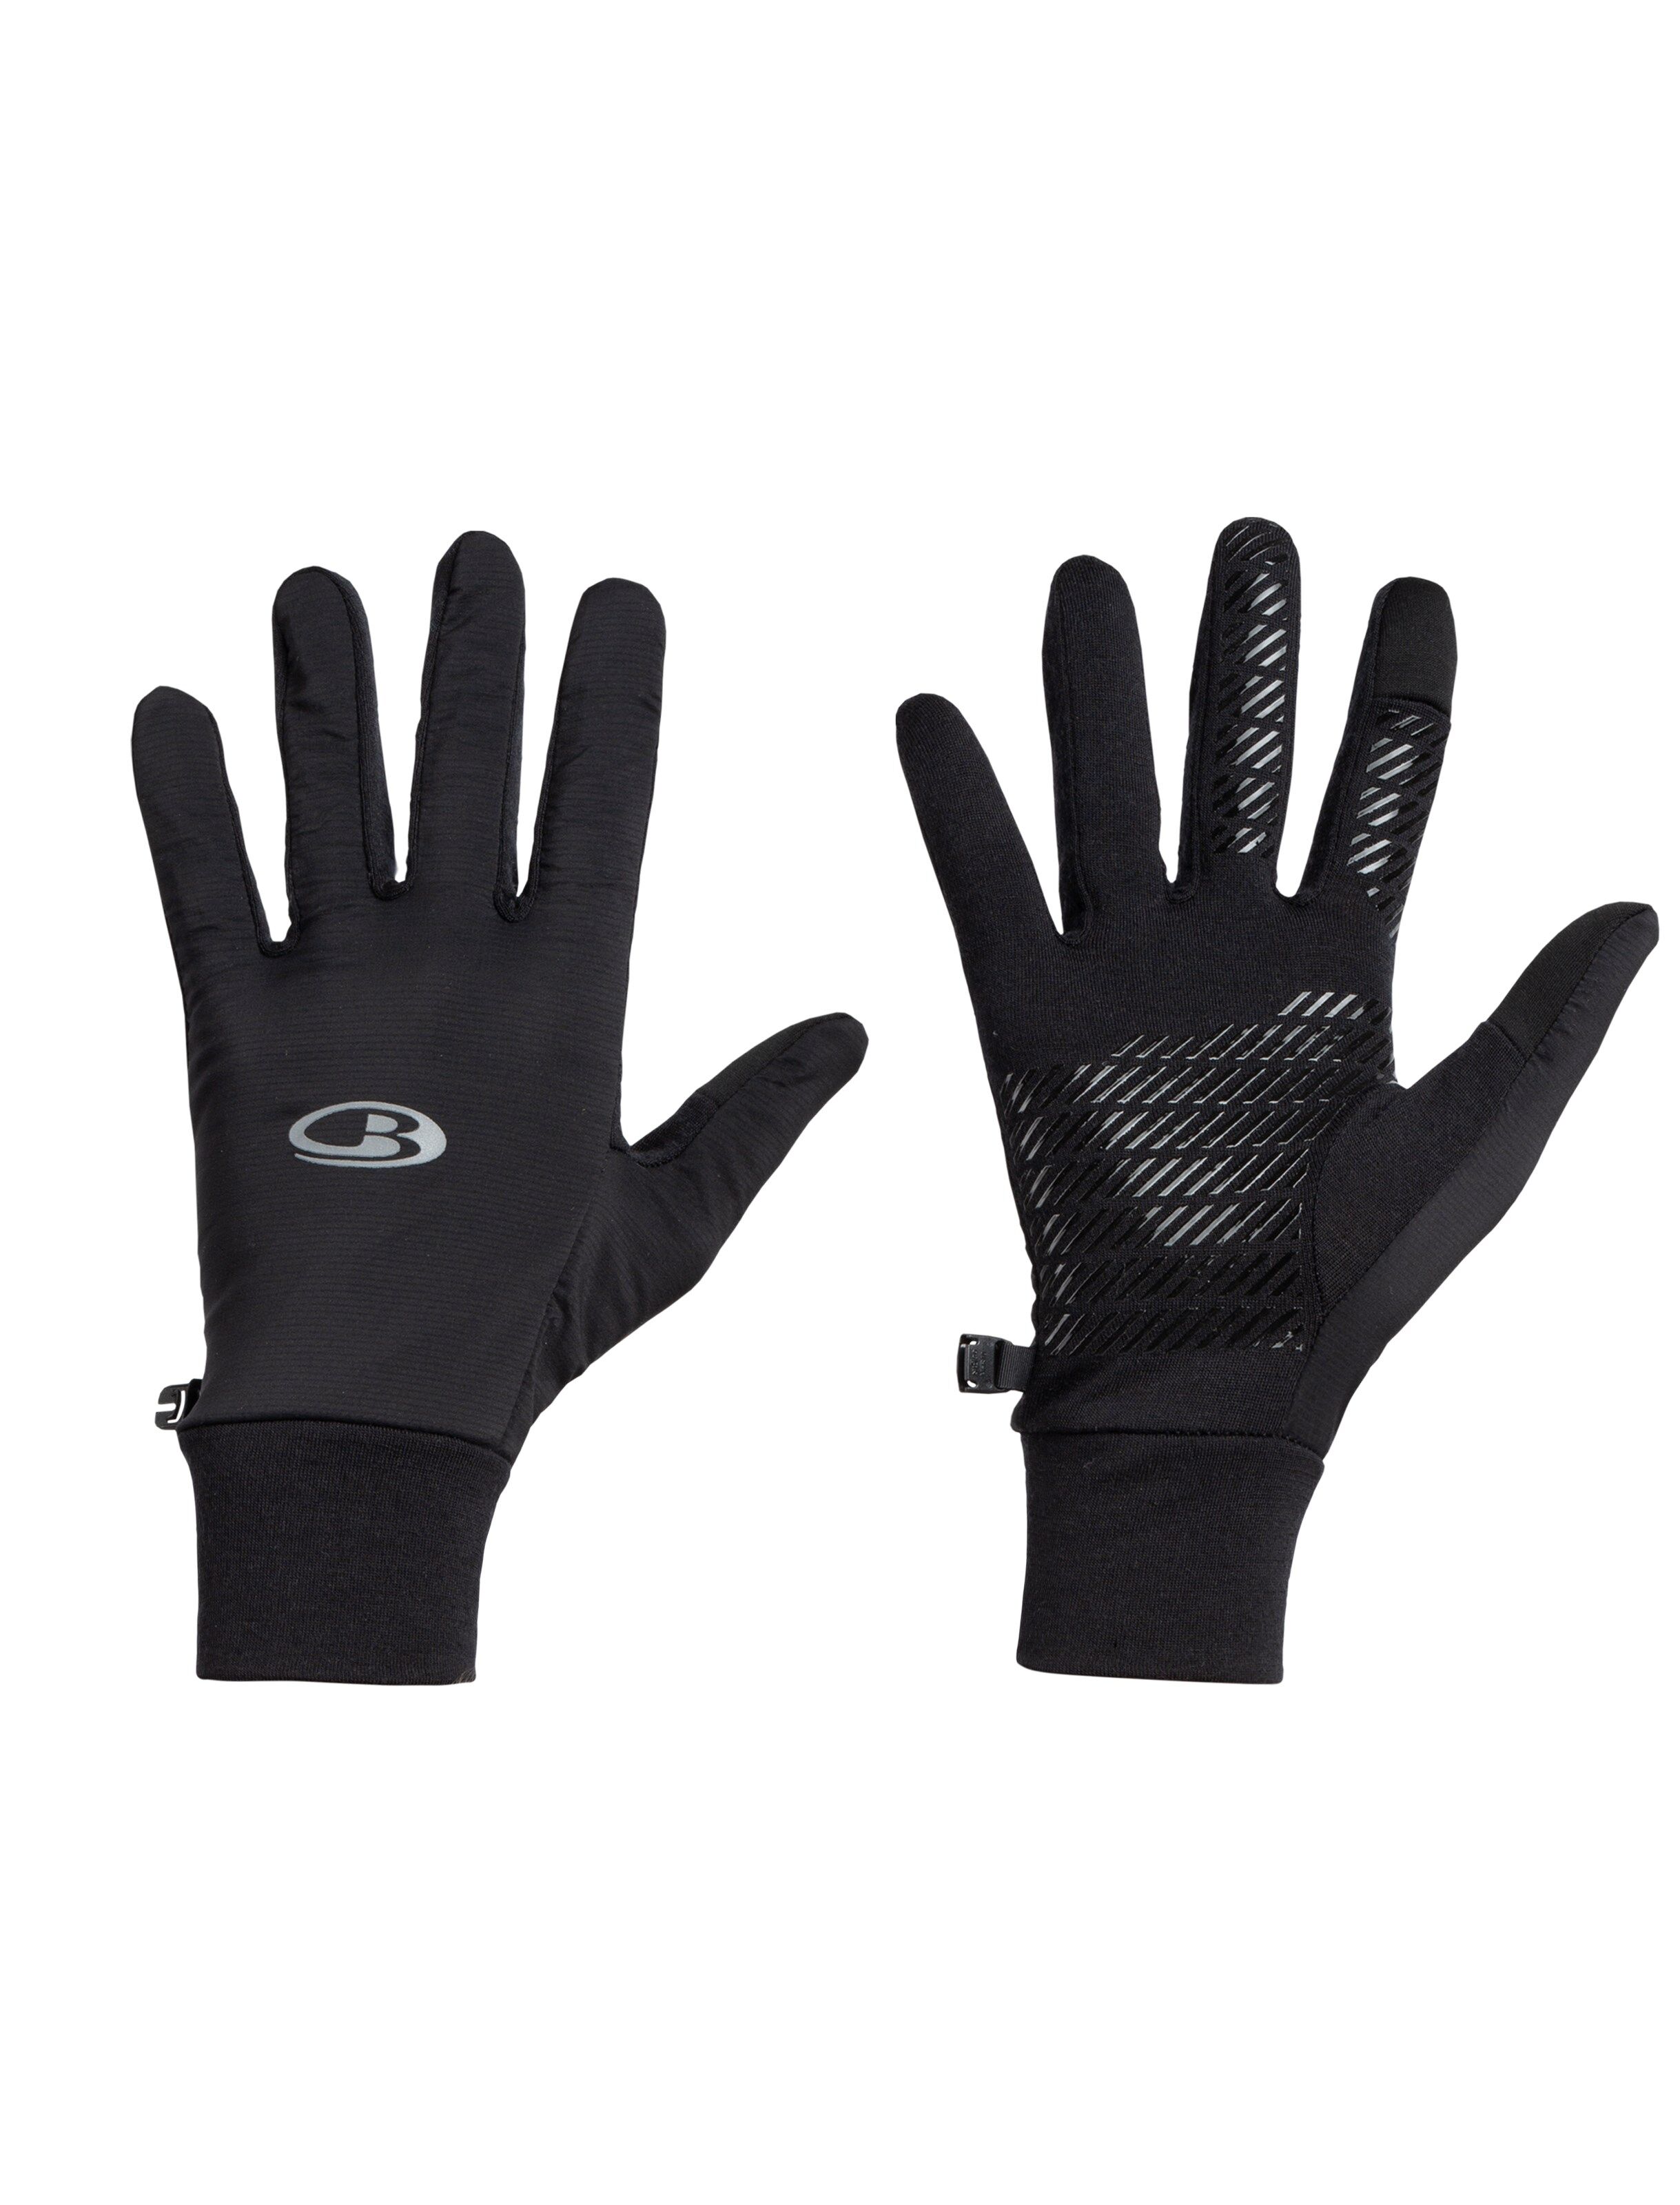 Icebreaker Tech Trainer Hybrid Gloves hansker unisex Black S 2019